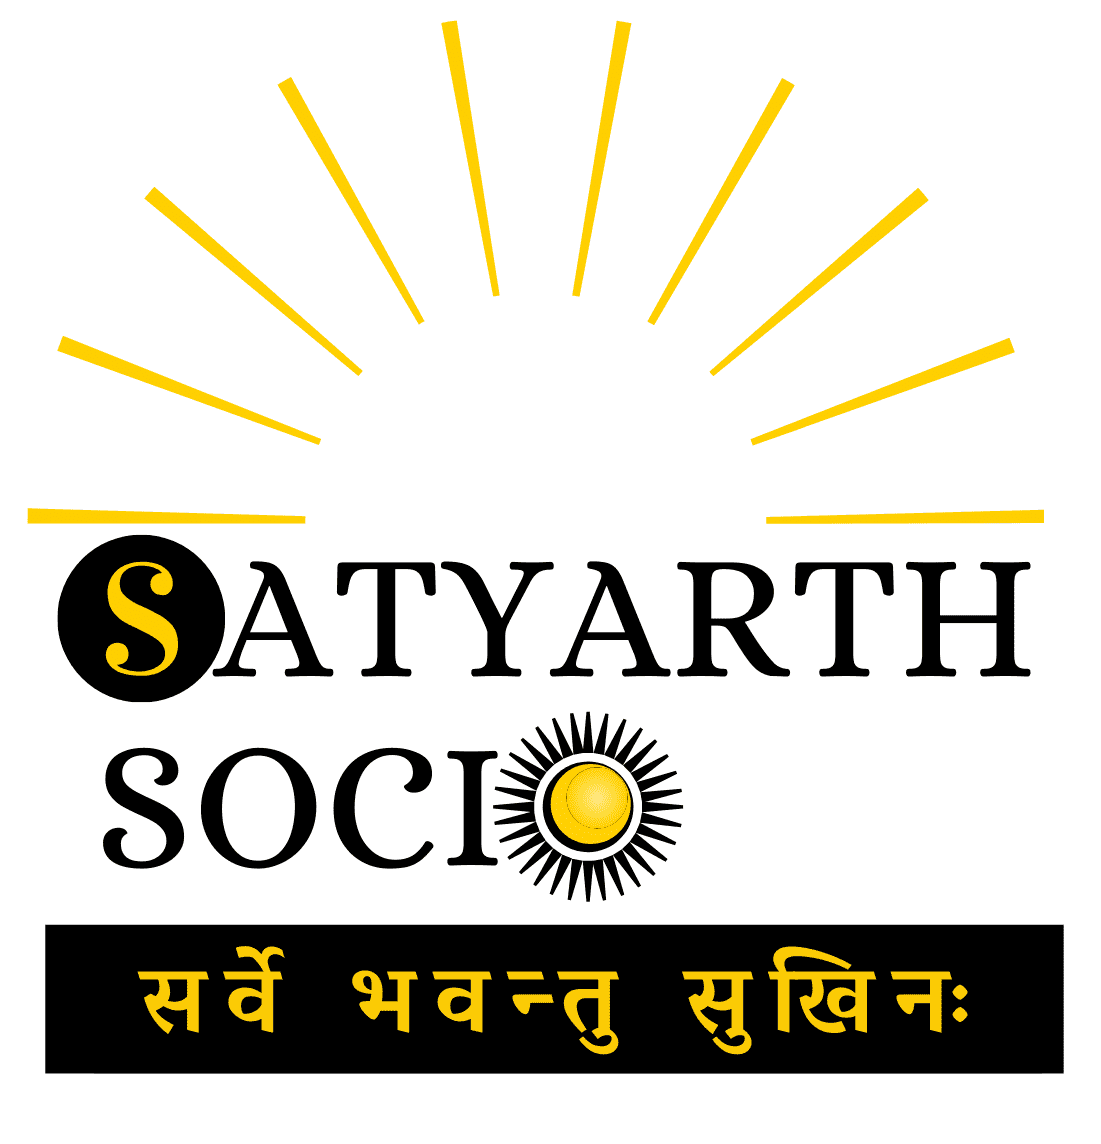 satyarth-socio-logo